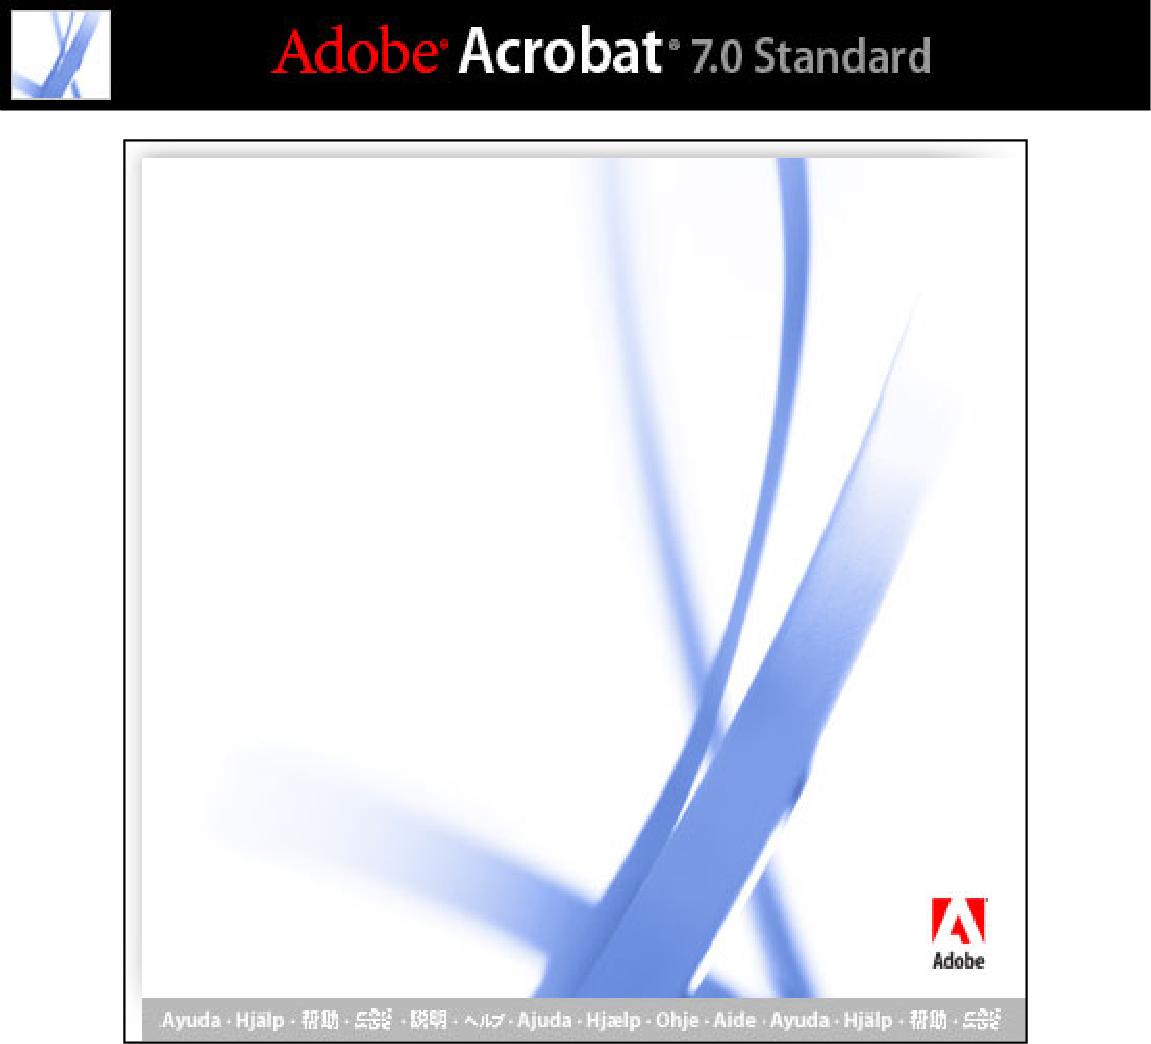 adobe photoshop cs shortcut keys pdf download